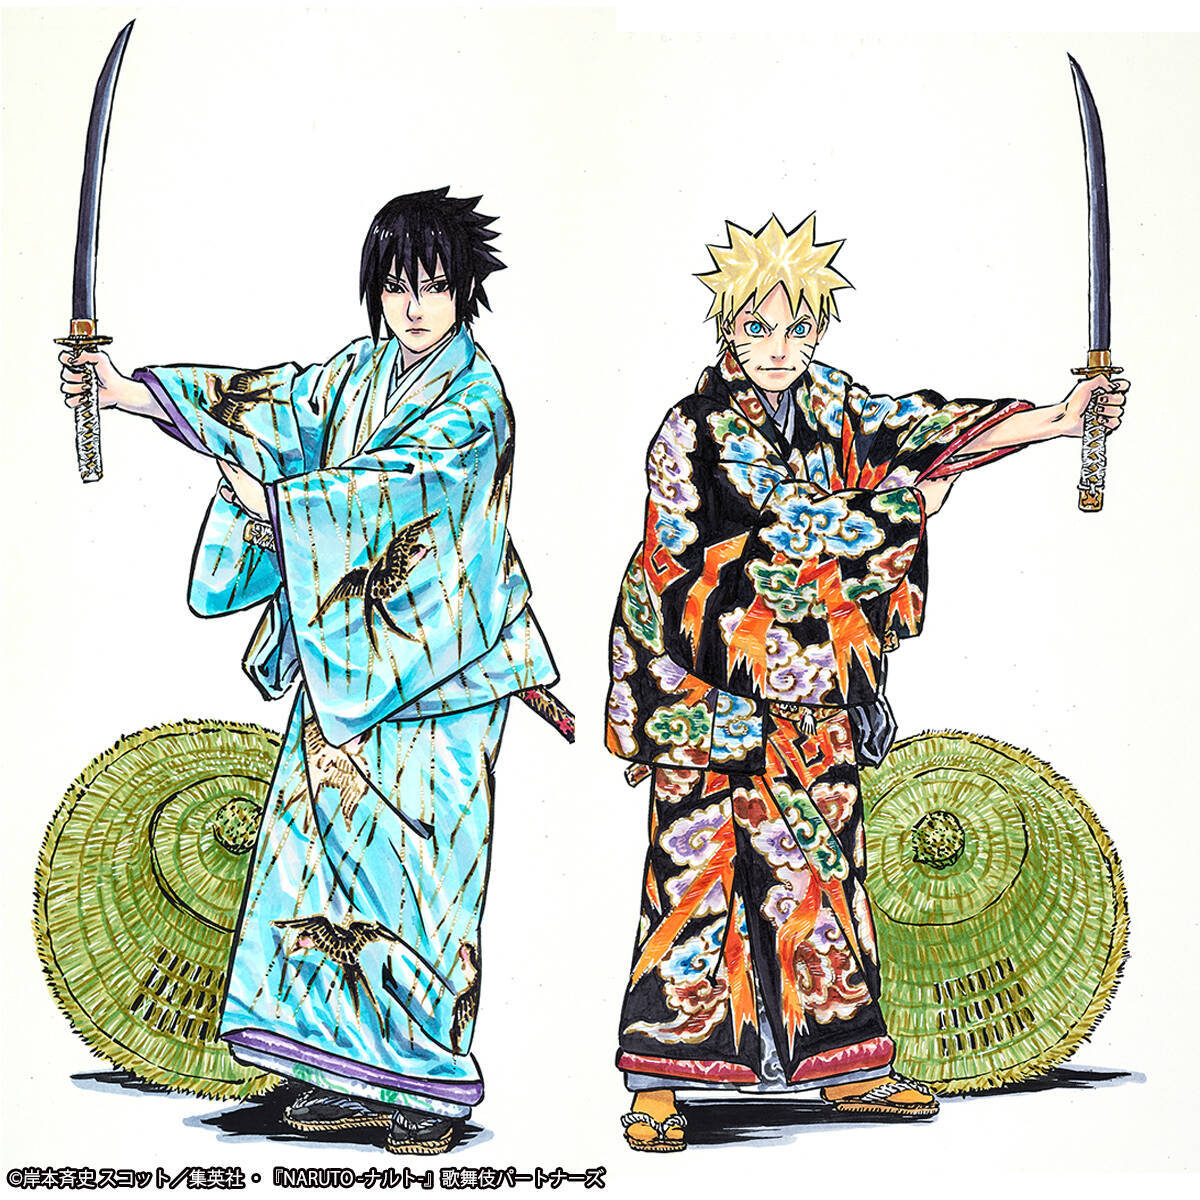 新作歌舞伎 Naruto ナルト 上演記念 岸本斉史描き下ろし着物姿のナルト サスケが立体化 原作テイストの造形がポイント 18年11月5日 エキサイトニュース